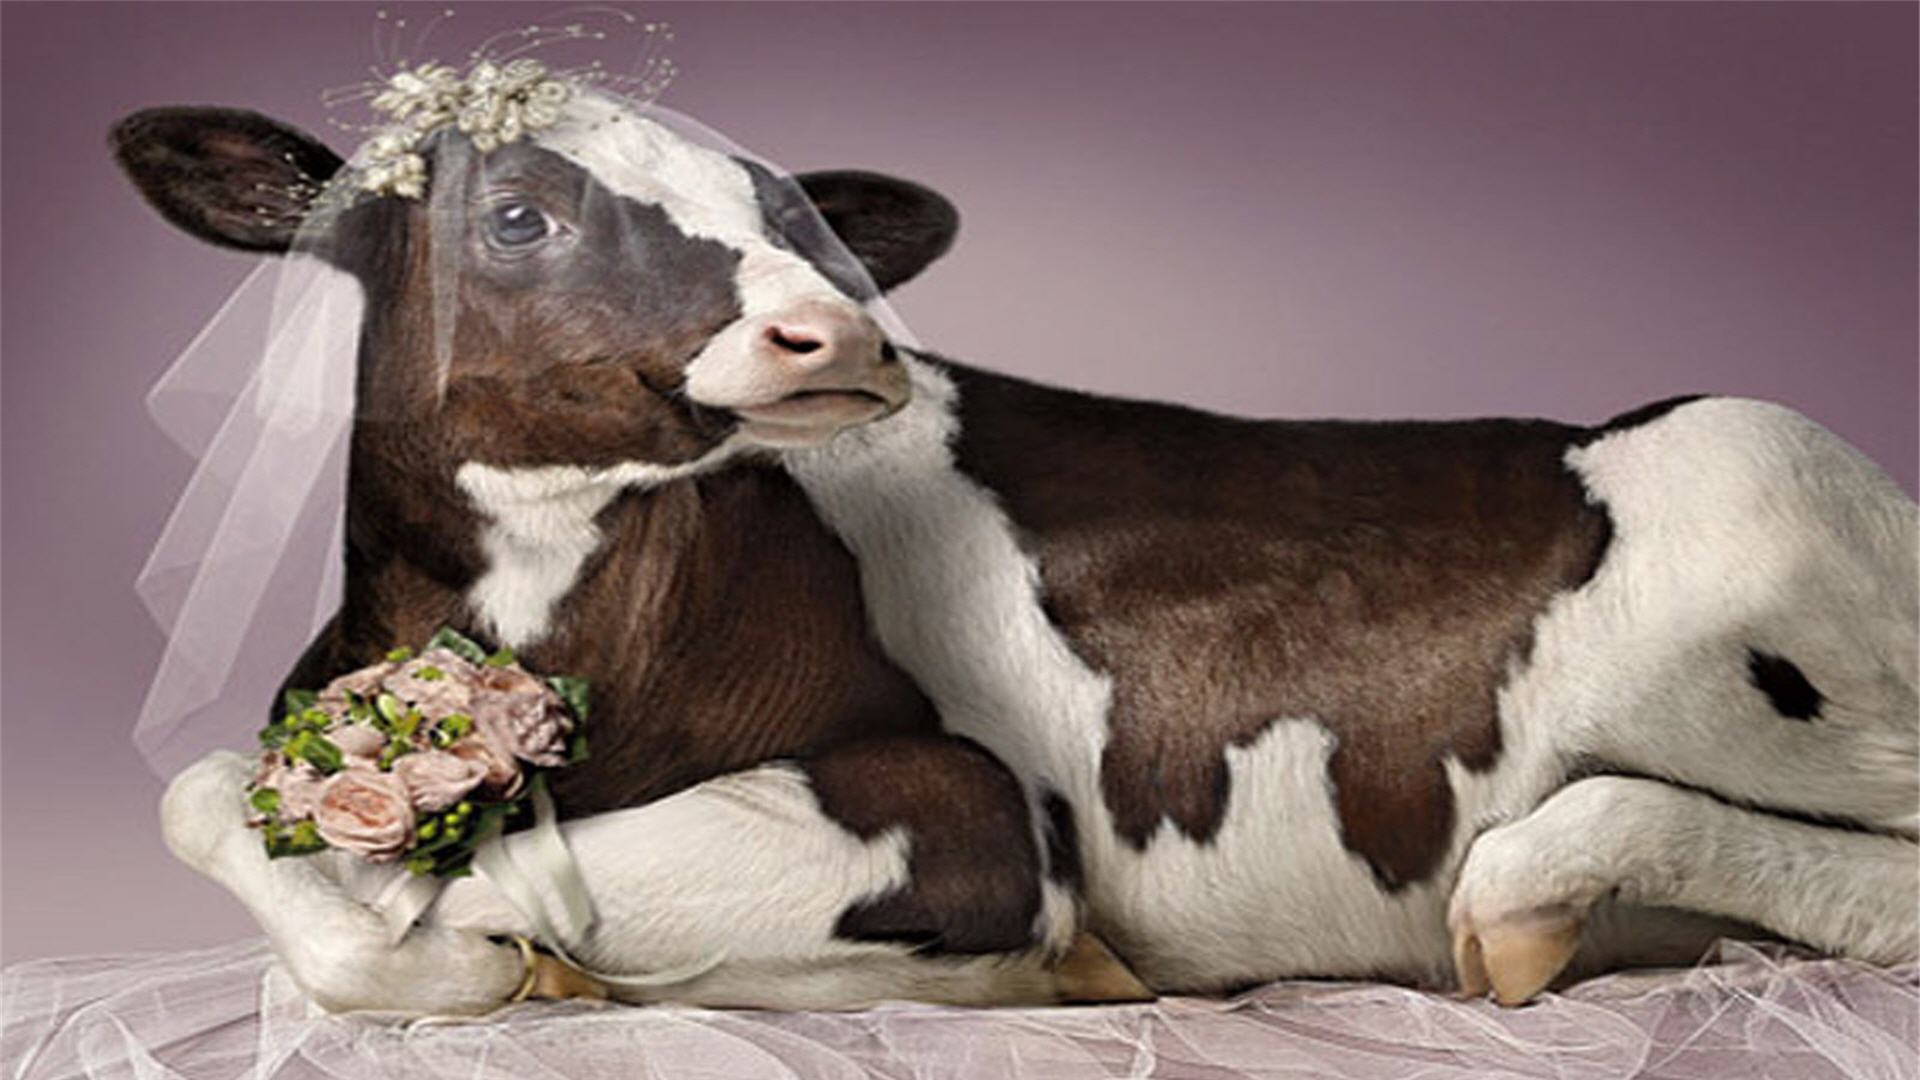 Funny Cow Wallpaper - WallpaperSafari